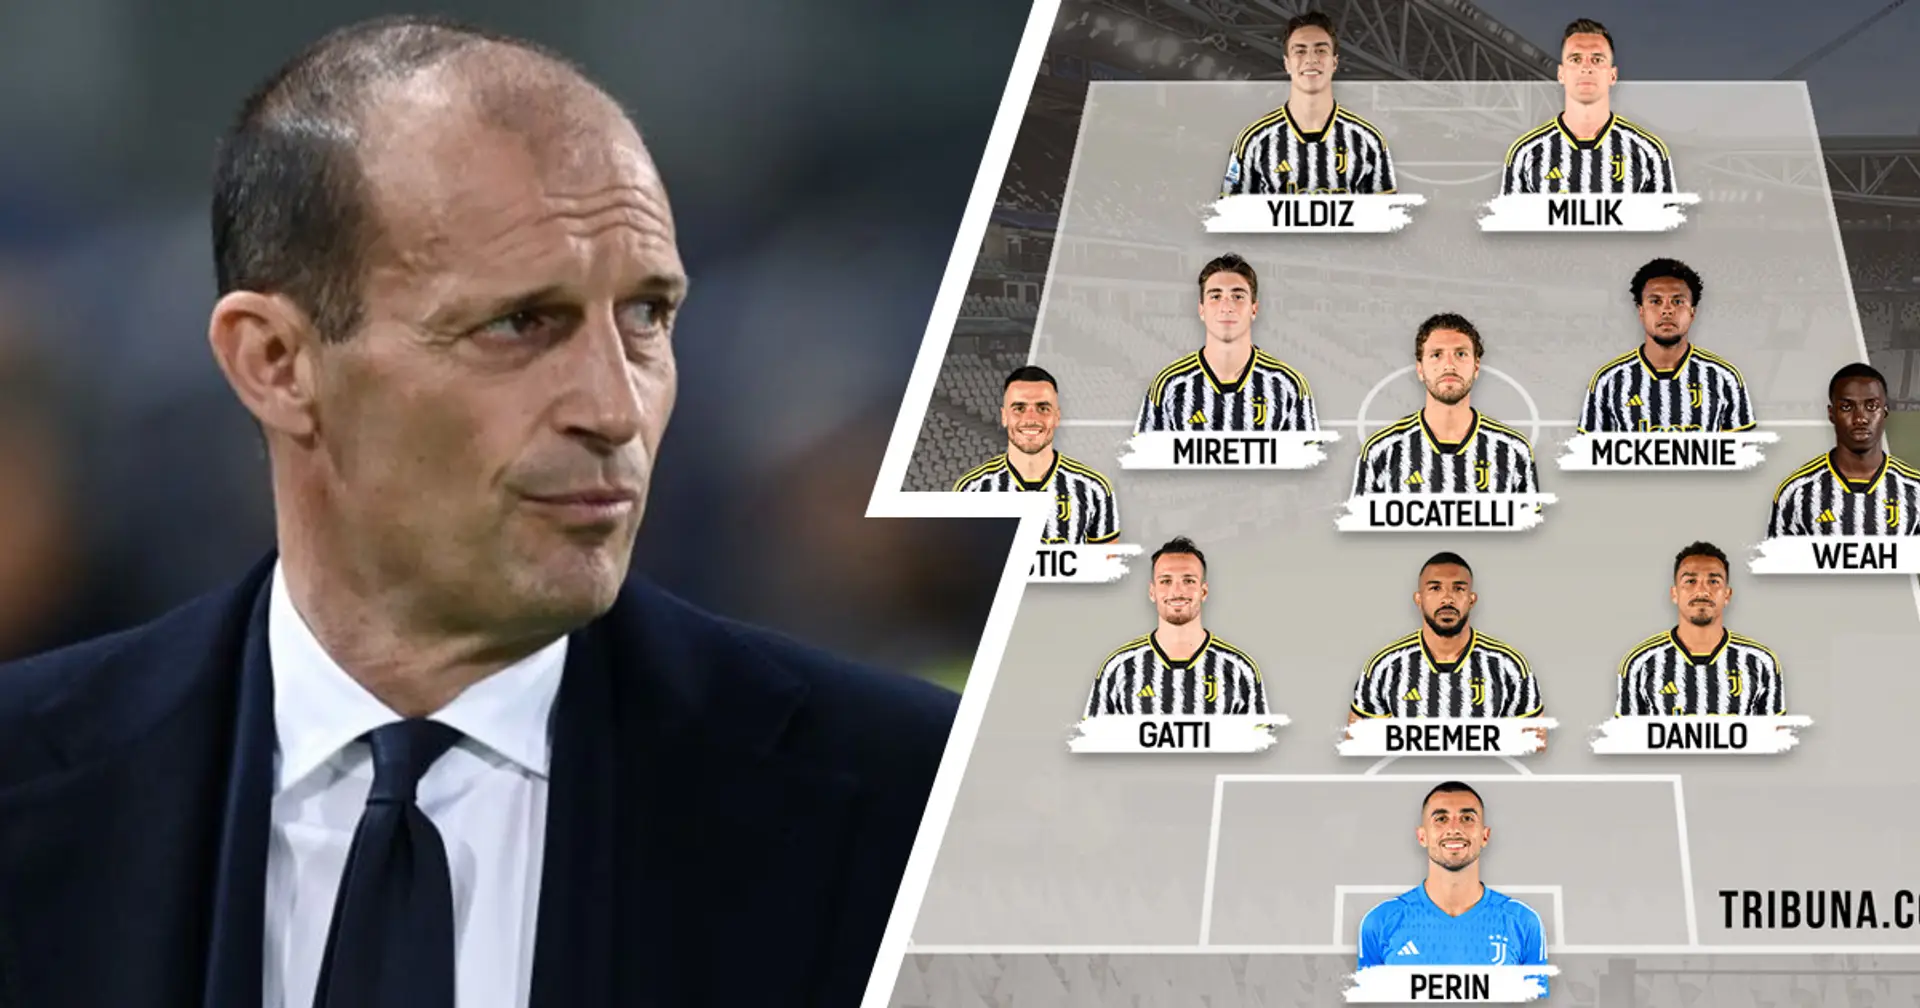 FORMAZIONI UFFICIALI 👉 Juventus vs Frosinone: Yildiz dal 1', torna Gatti in difesa